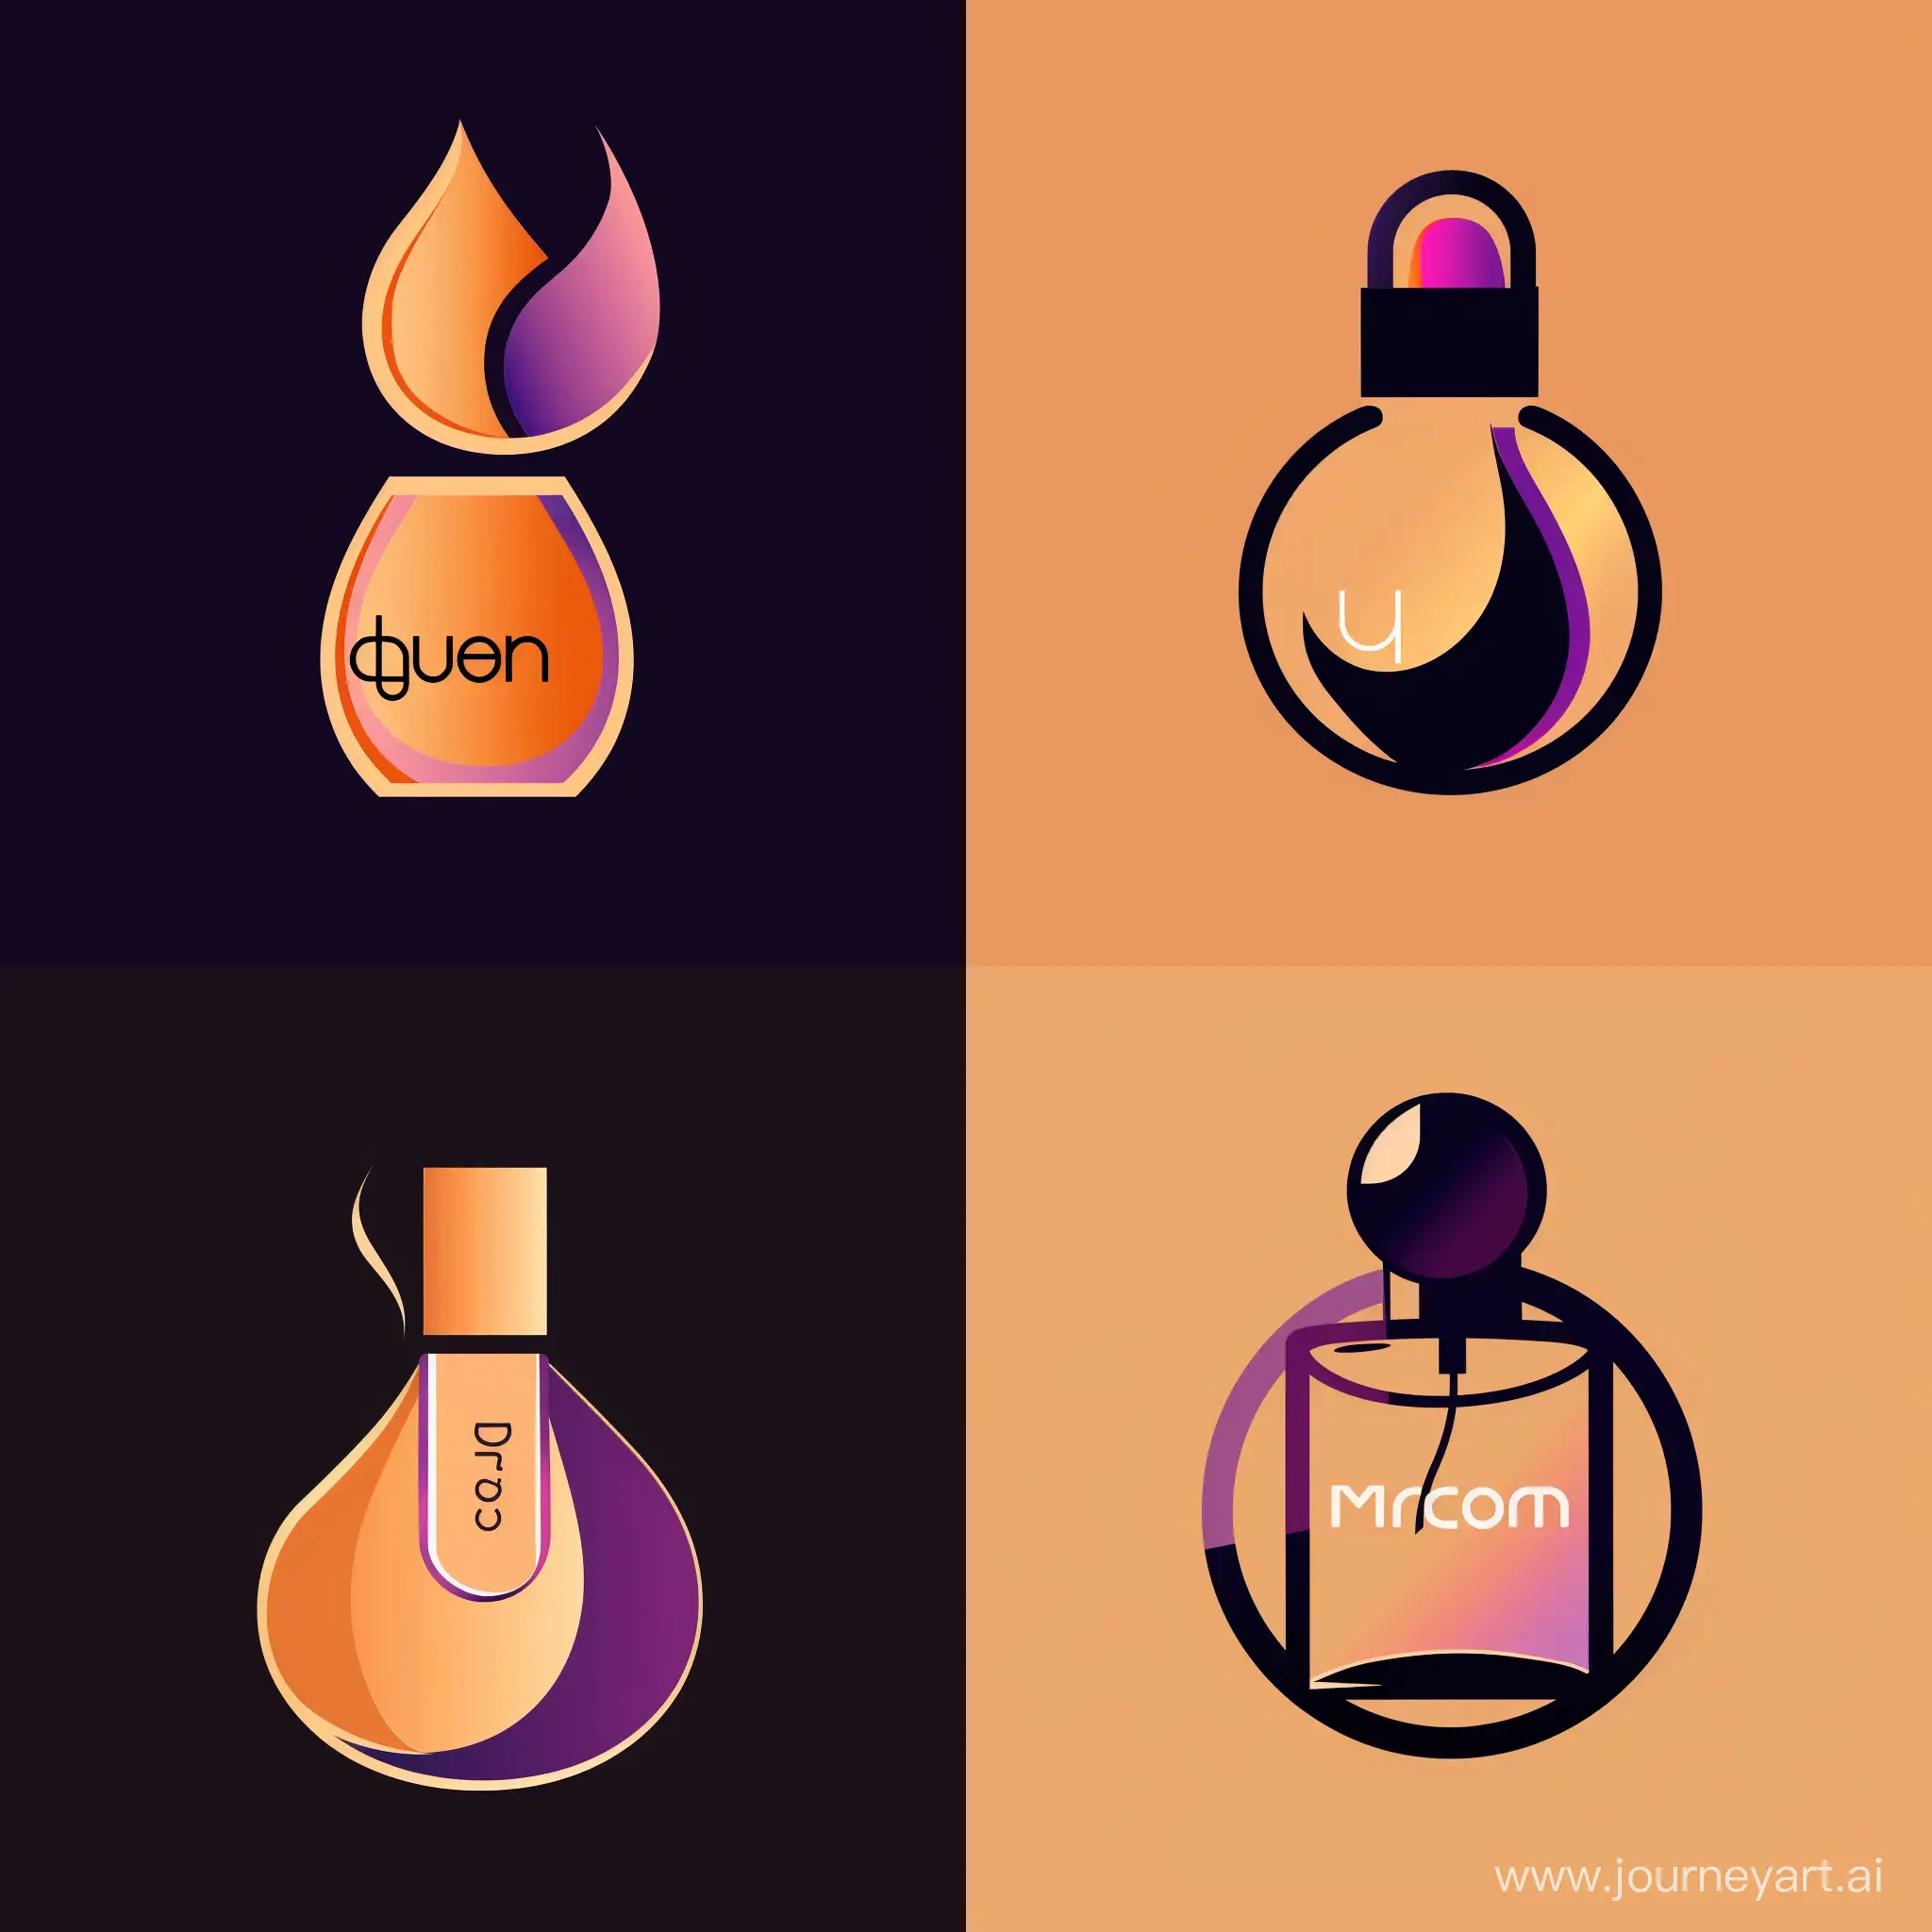 https://i.imgur.com/7JzLAYo.jpeg логотип , фиолетово оранжевый цвет, логотип духов